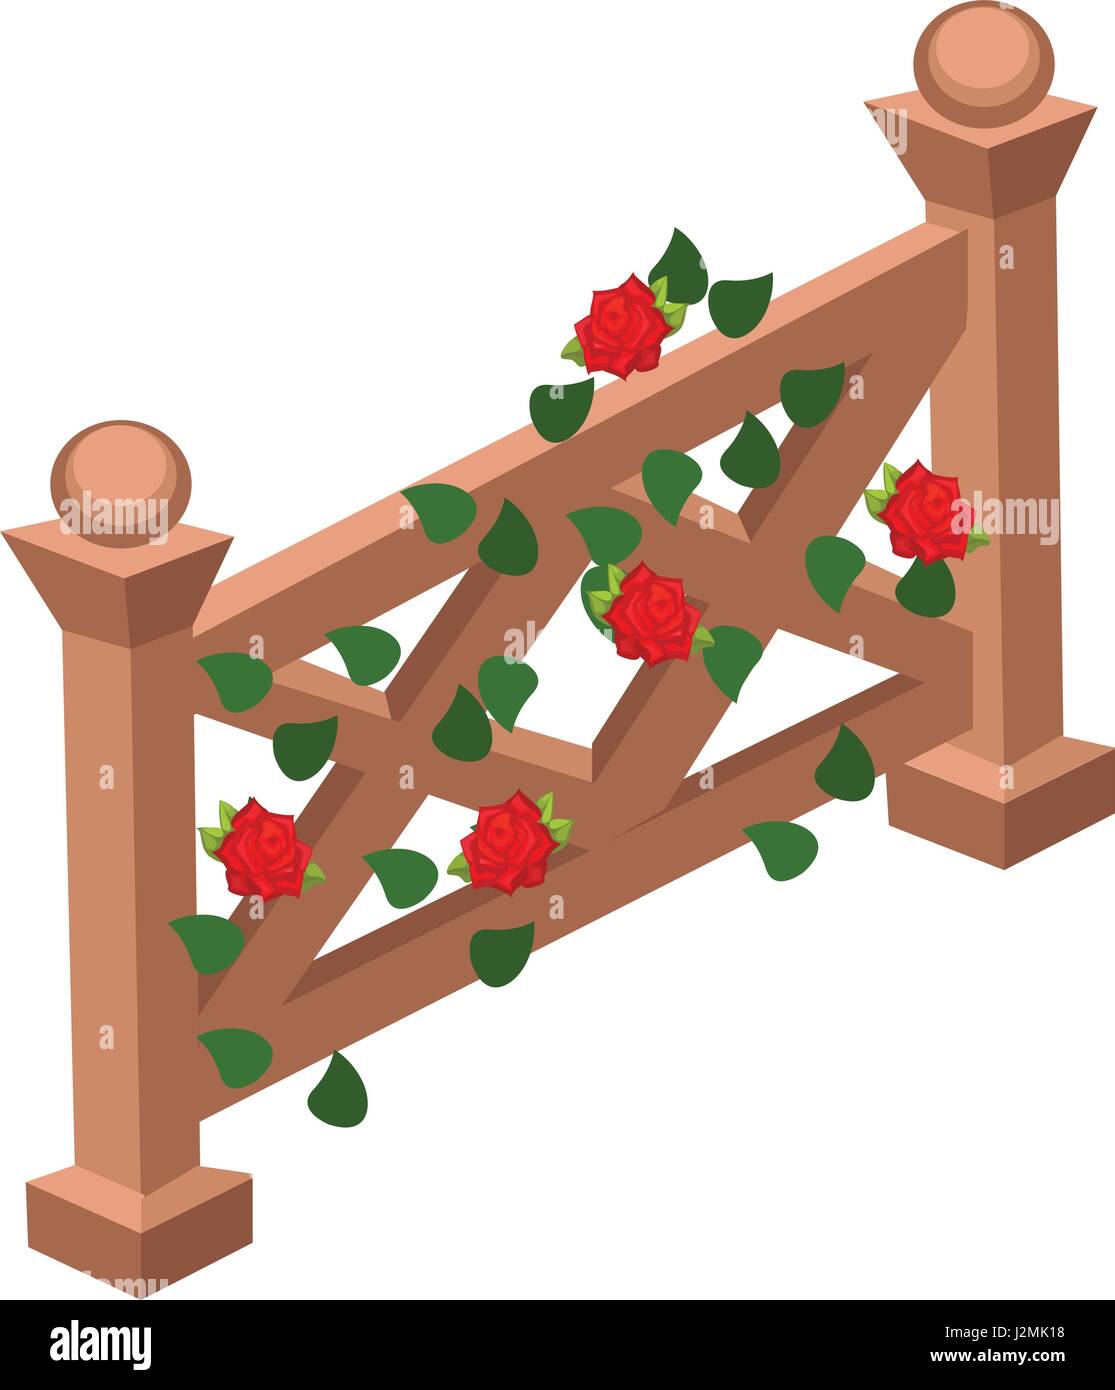 Isometrische Cartoon Holzzaun oder Gate verziert mit roten Rosen und grünen Blätter Stock Vektor